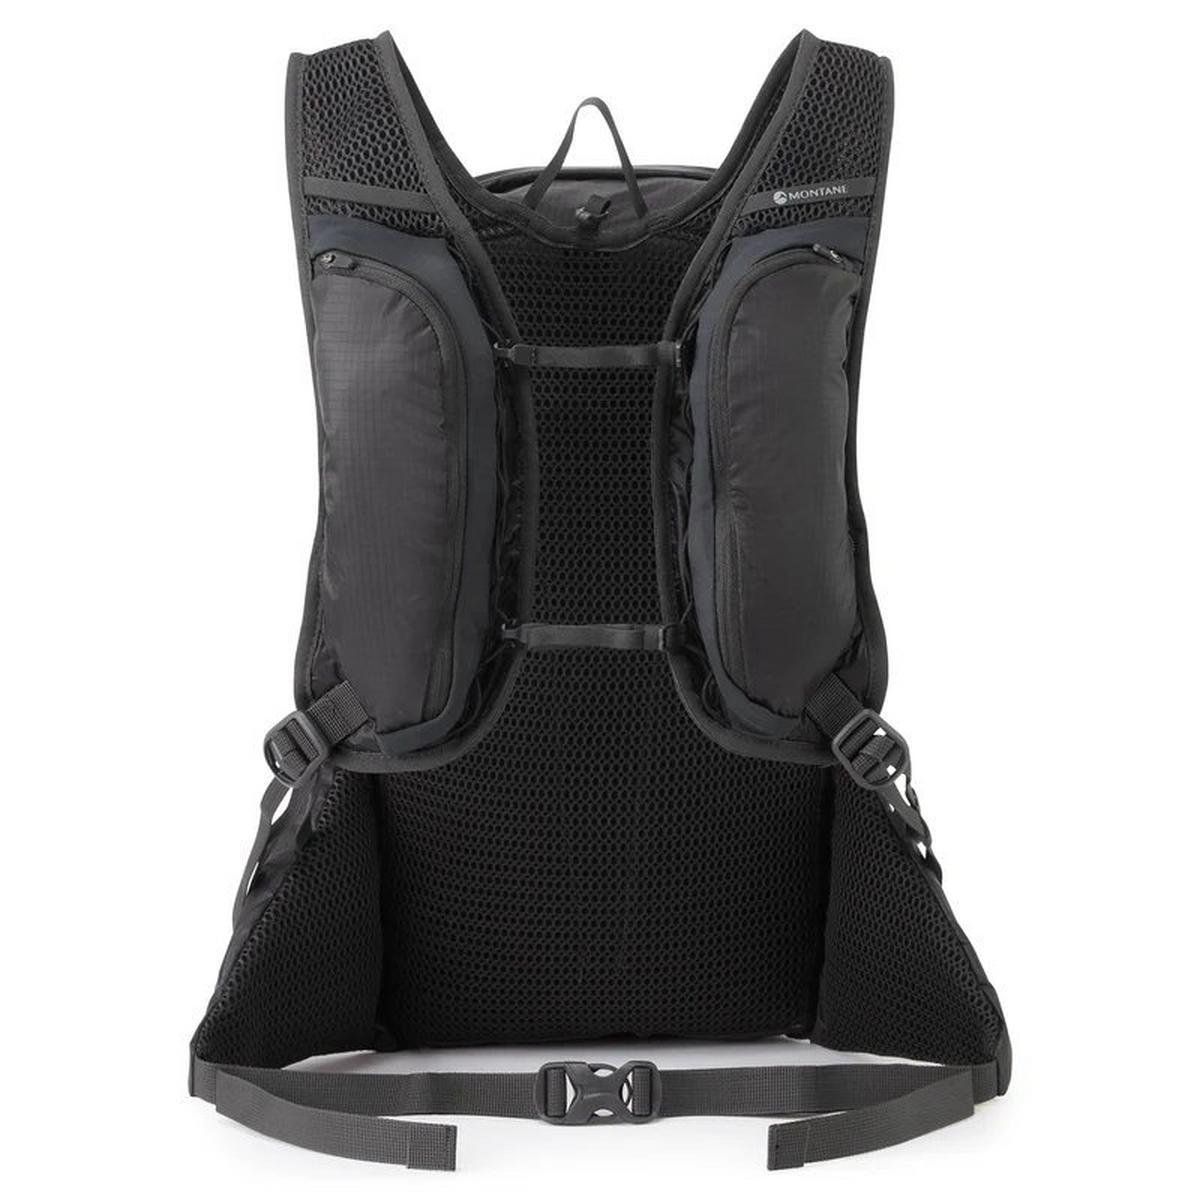 Montane Trailblazer LT 20L Backpack - Black